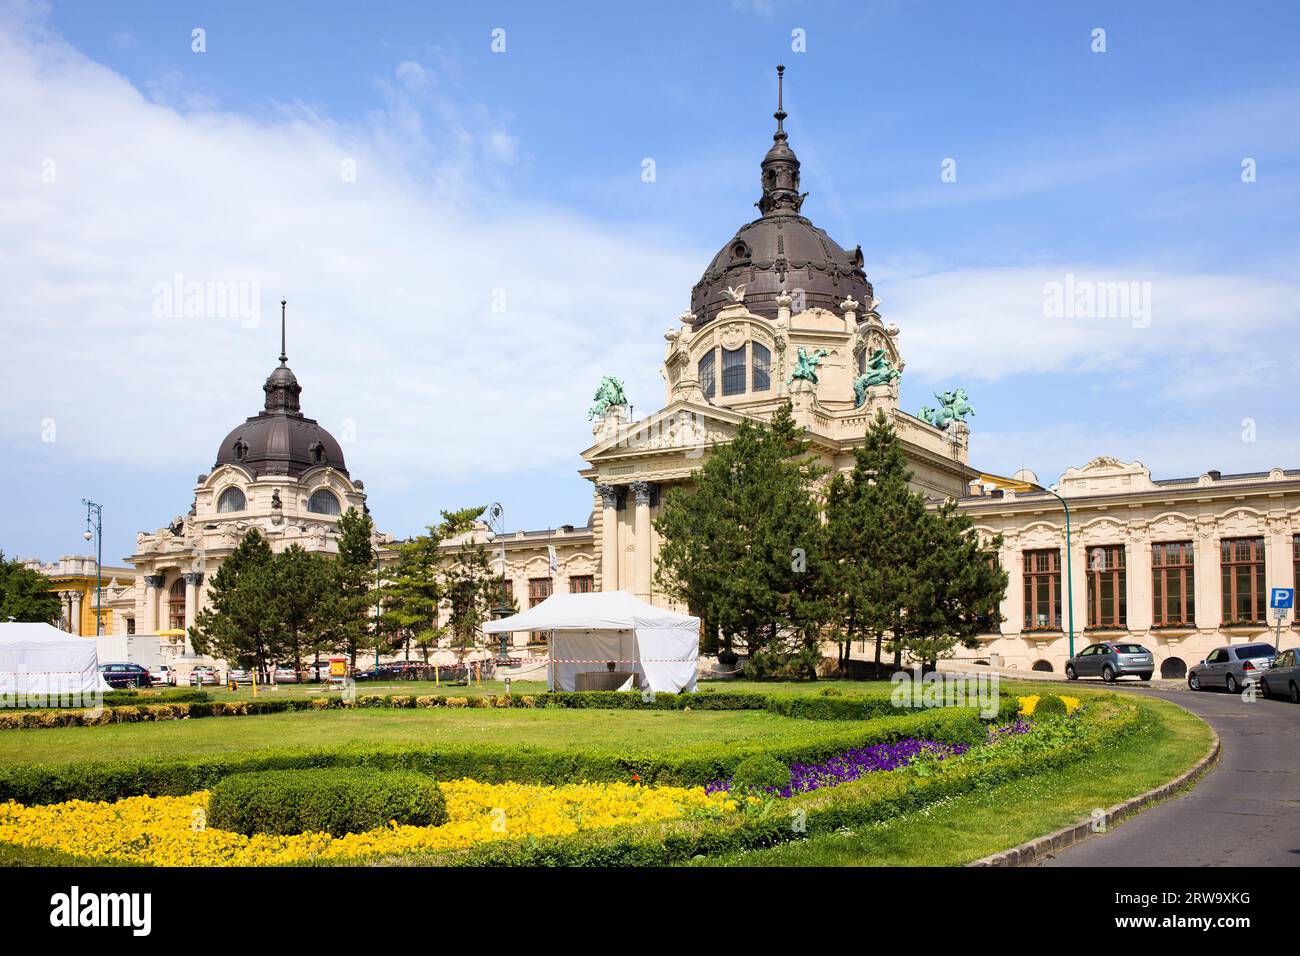 Bains thermaux médicinaux Szechenyi et Spa architecture néo-baroque à Budapest, Hongrie Banque D'Images